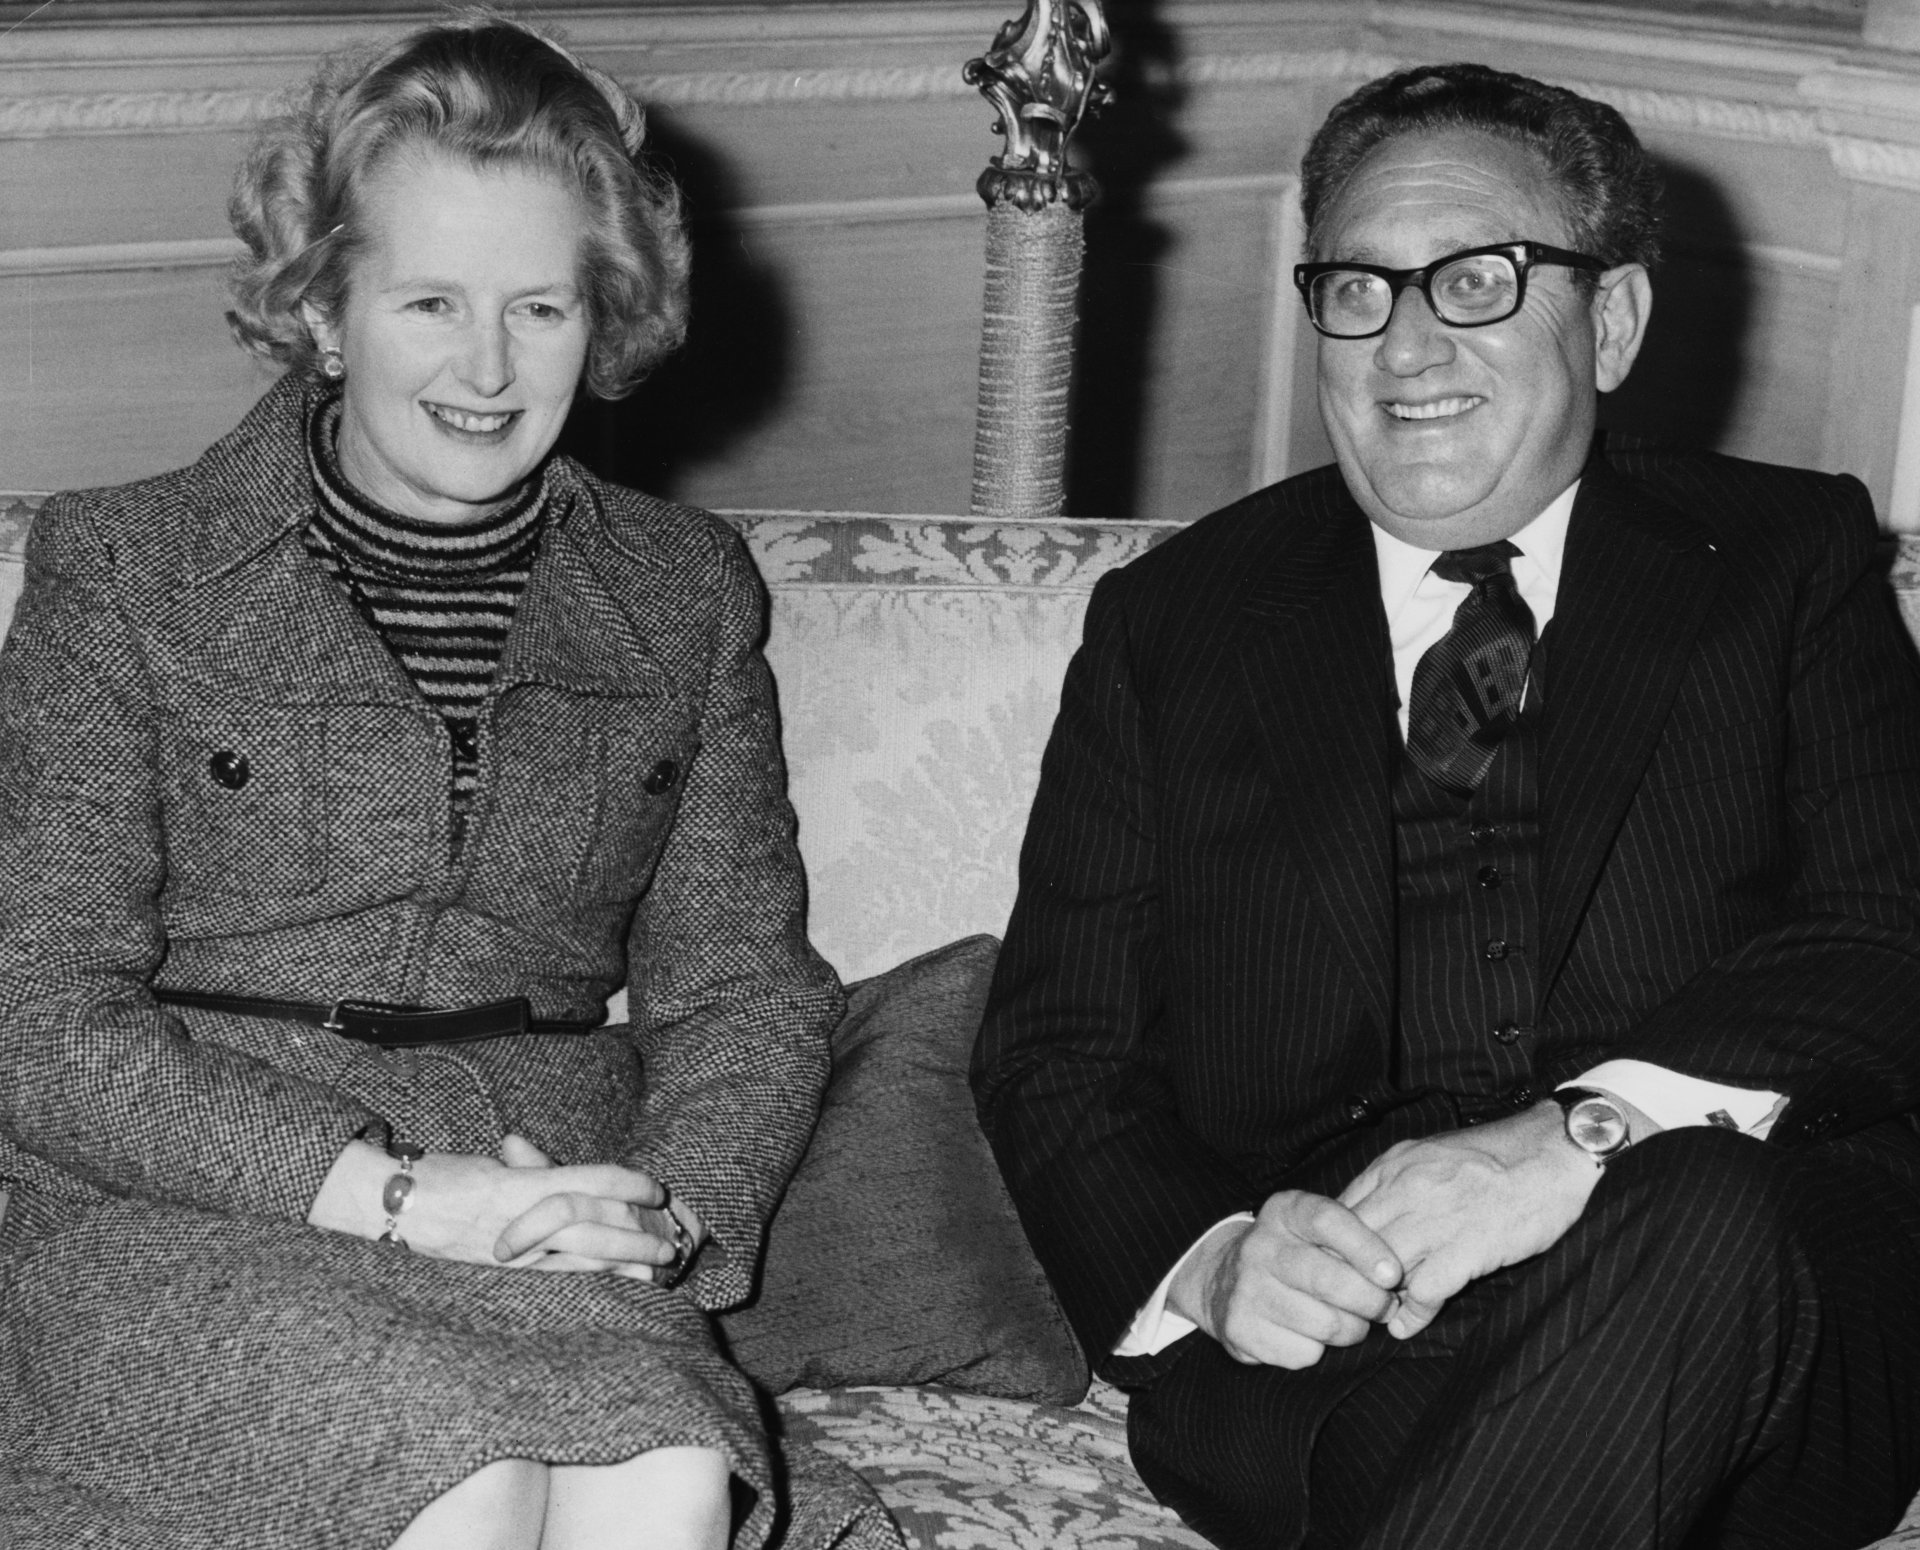 18 февруари 1985 г. - Хенри Кисинджър в компанията на лидера на Консервативната партия на Великобритания Маргарет Тачър по време на среща в Лондон.